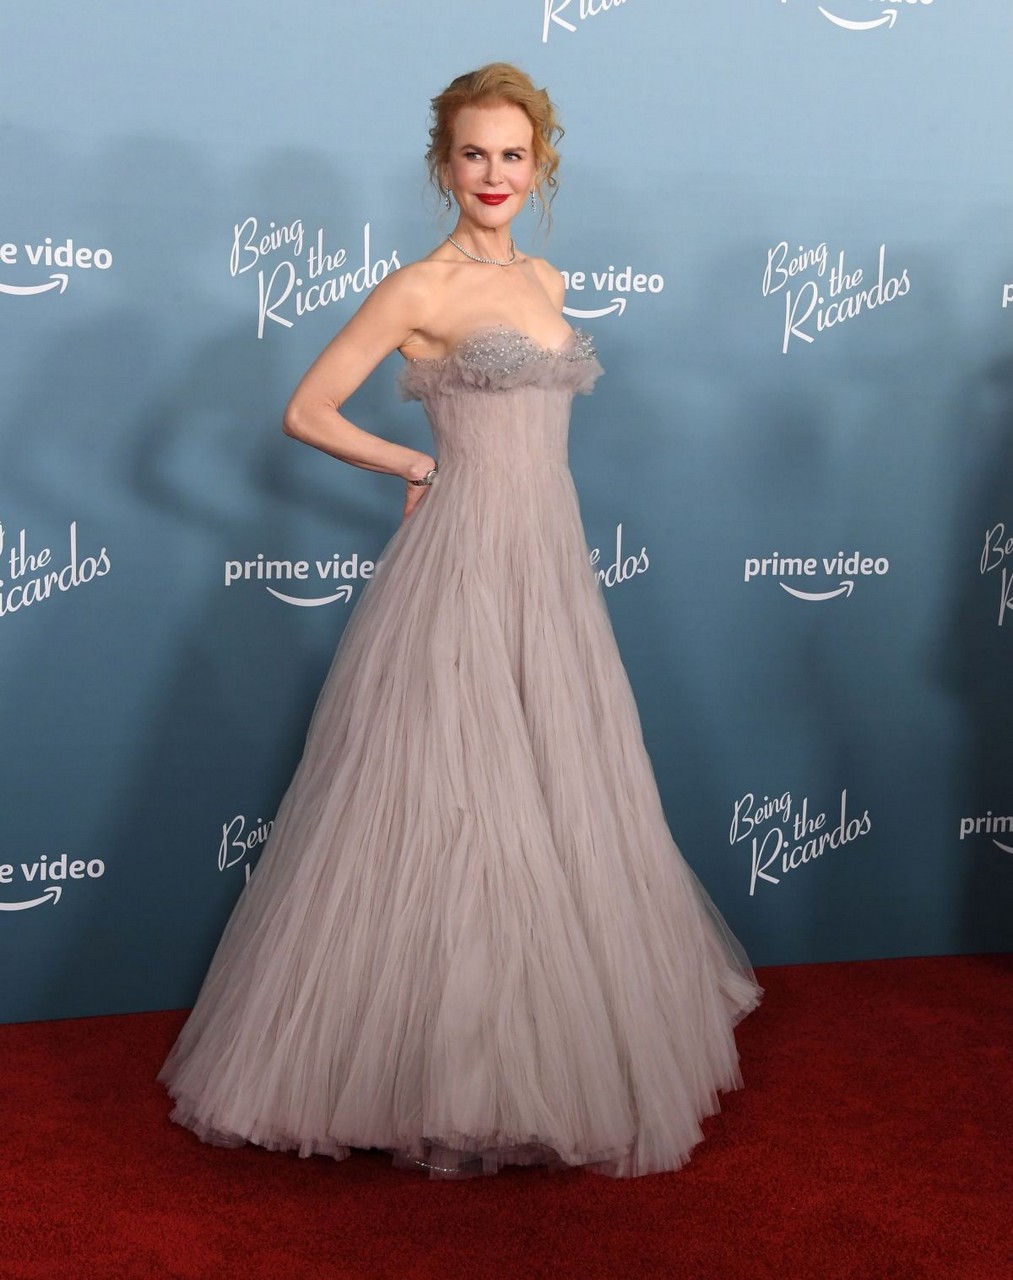 Nicole Kidman Being Ricardos Premiere Los Angeles